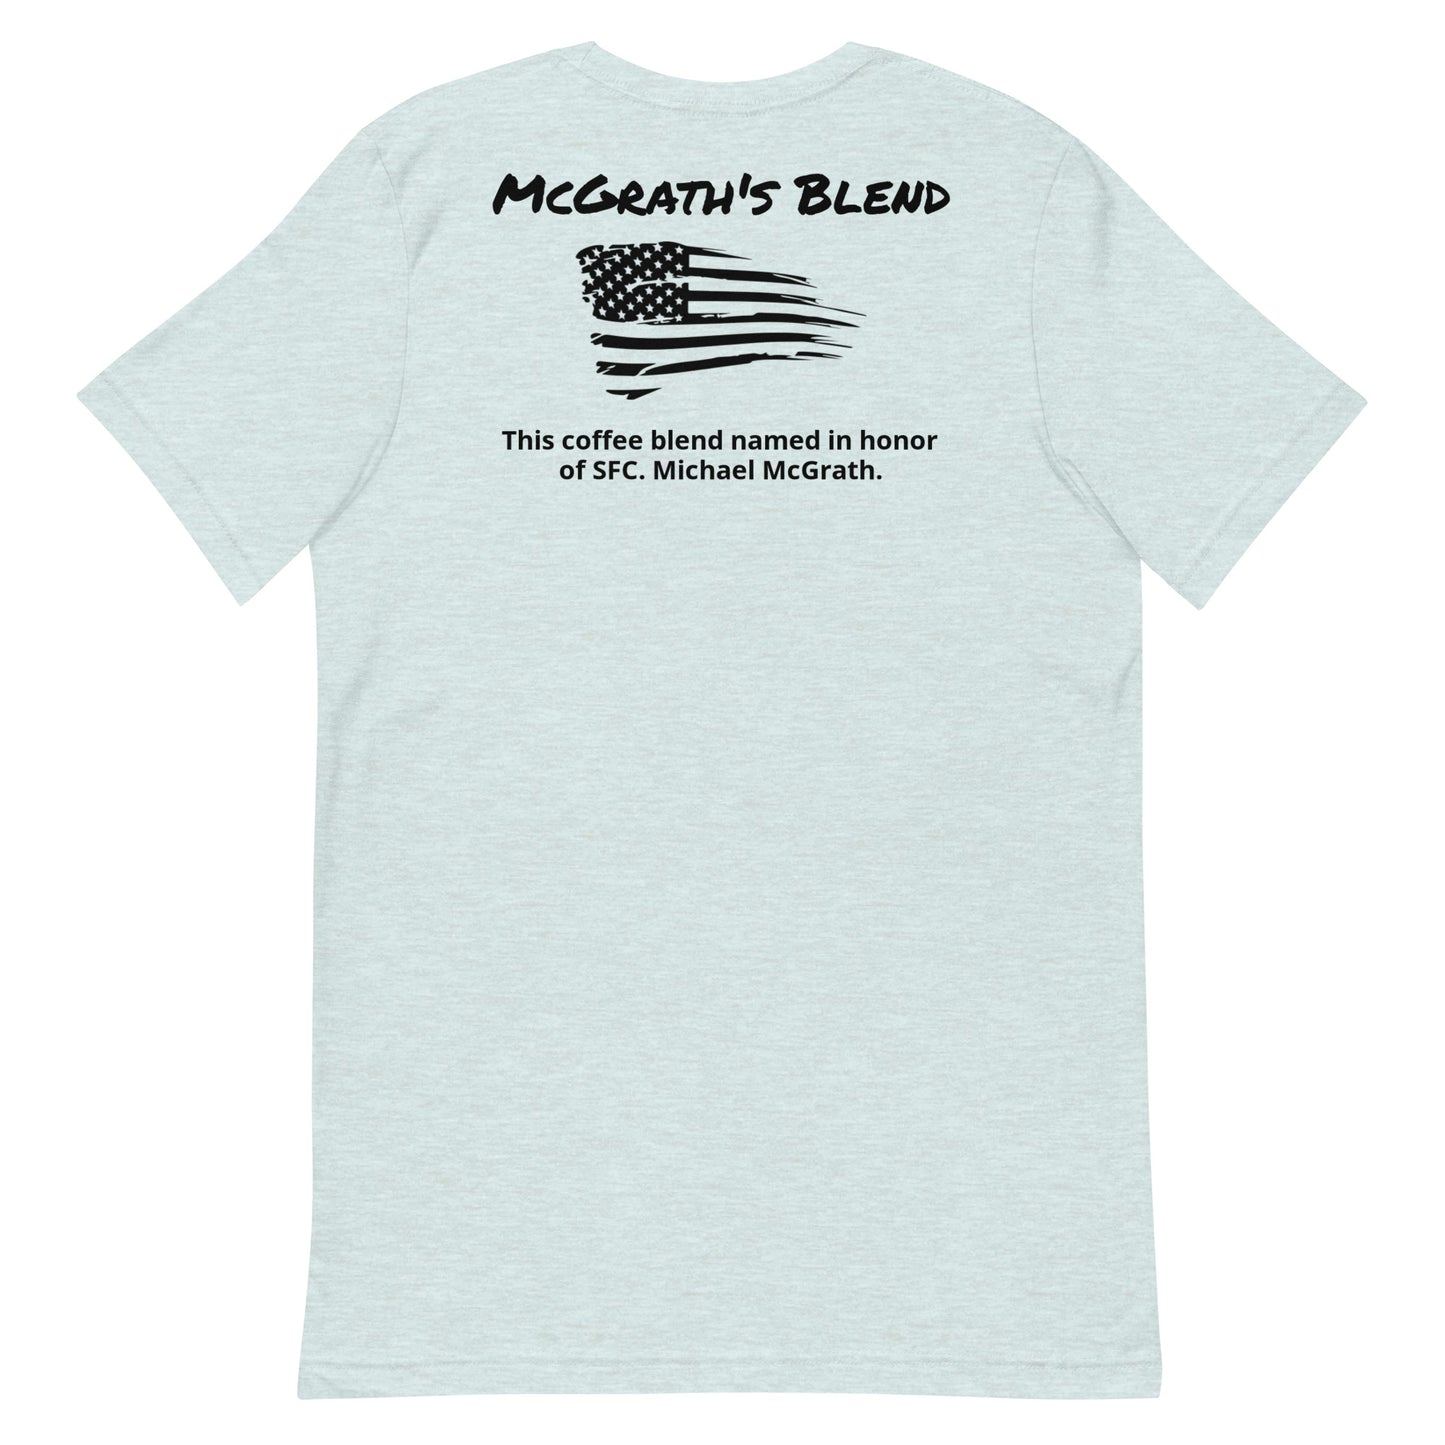 McGrath's Blend Unisex t-shirt